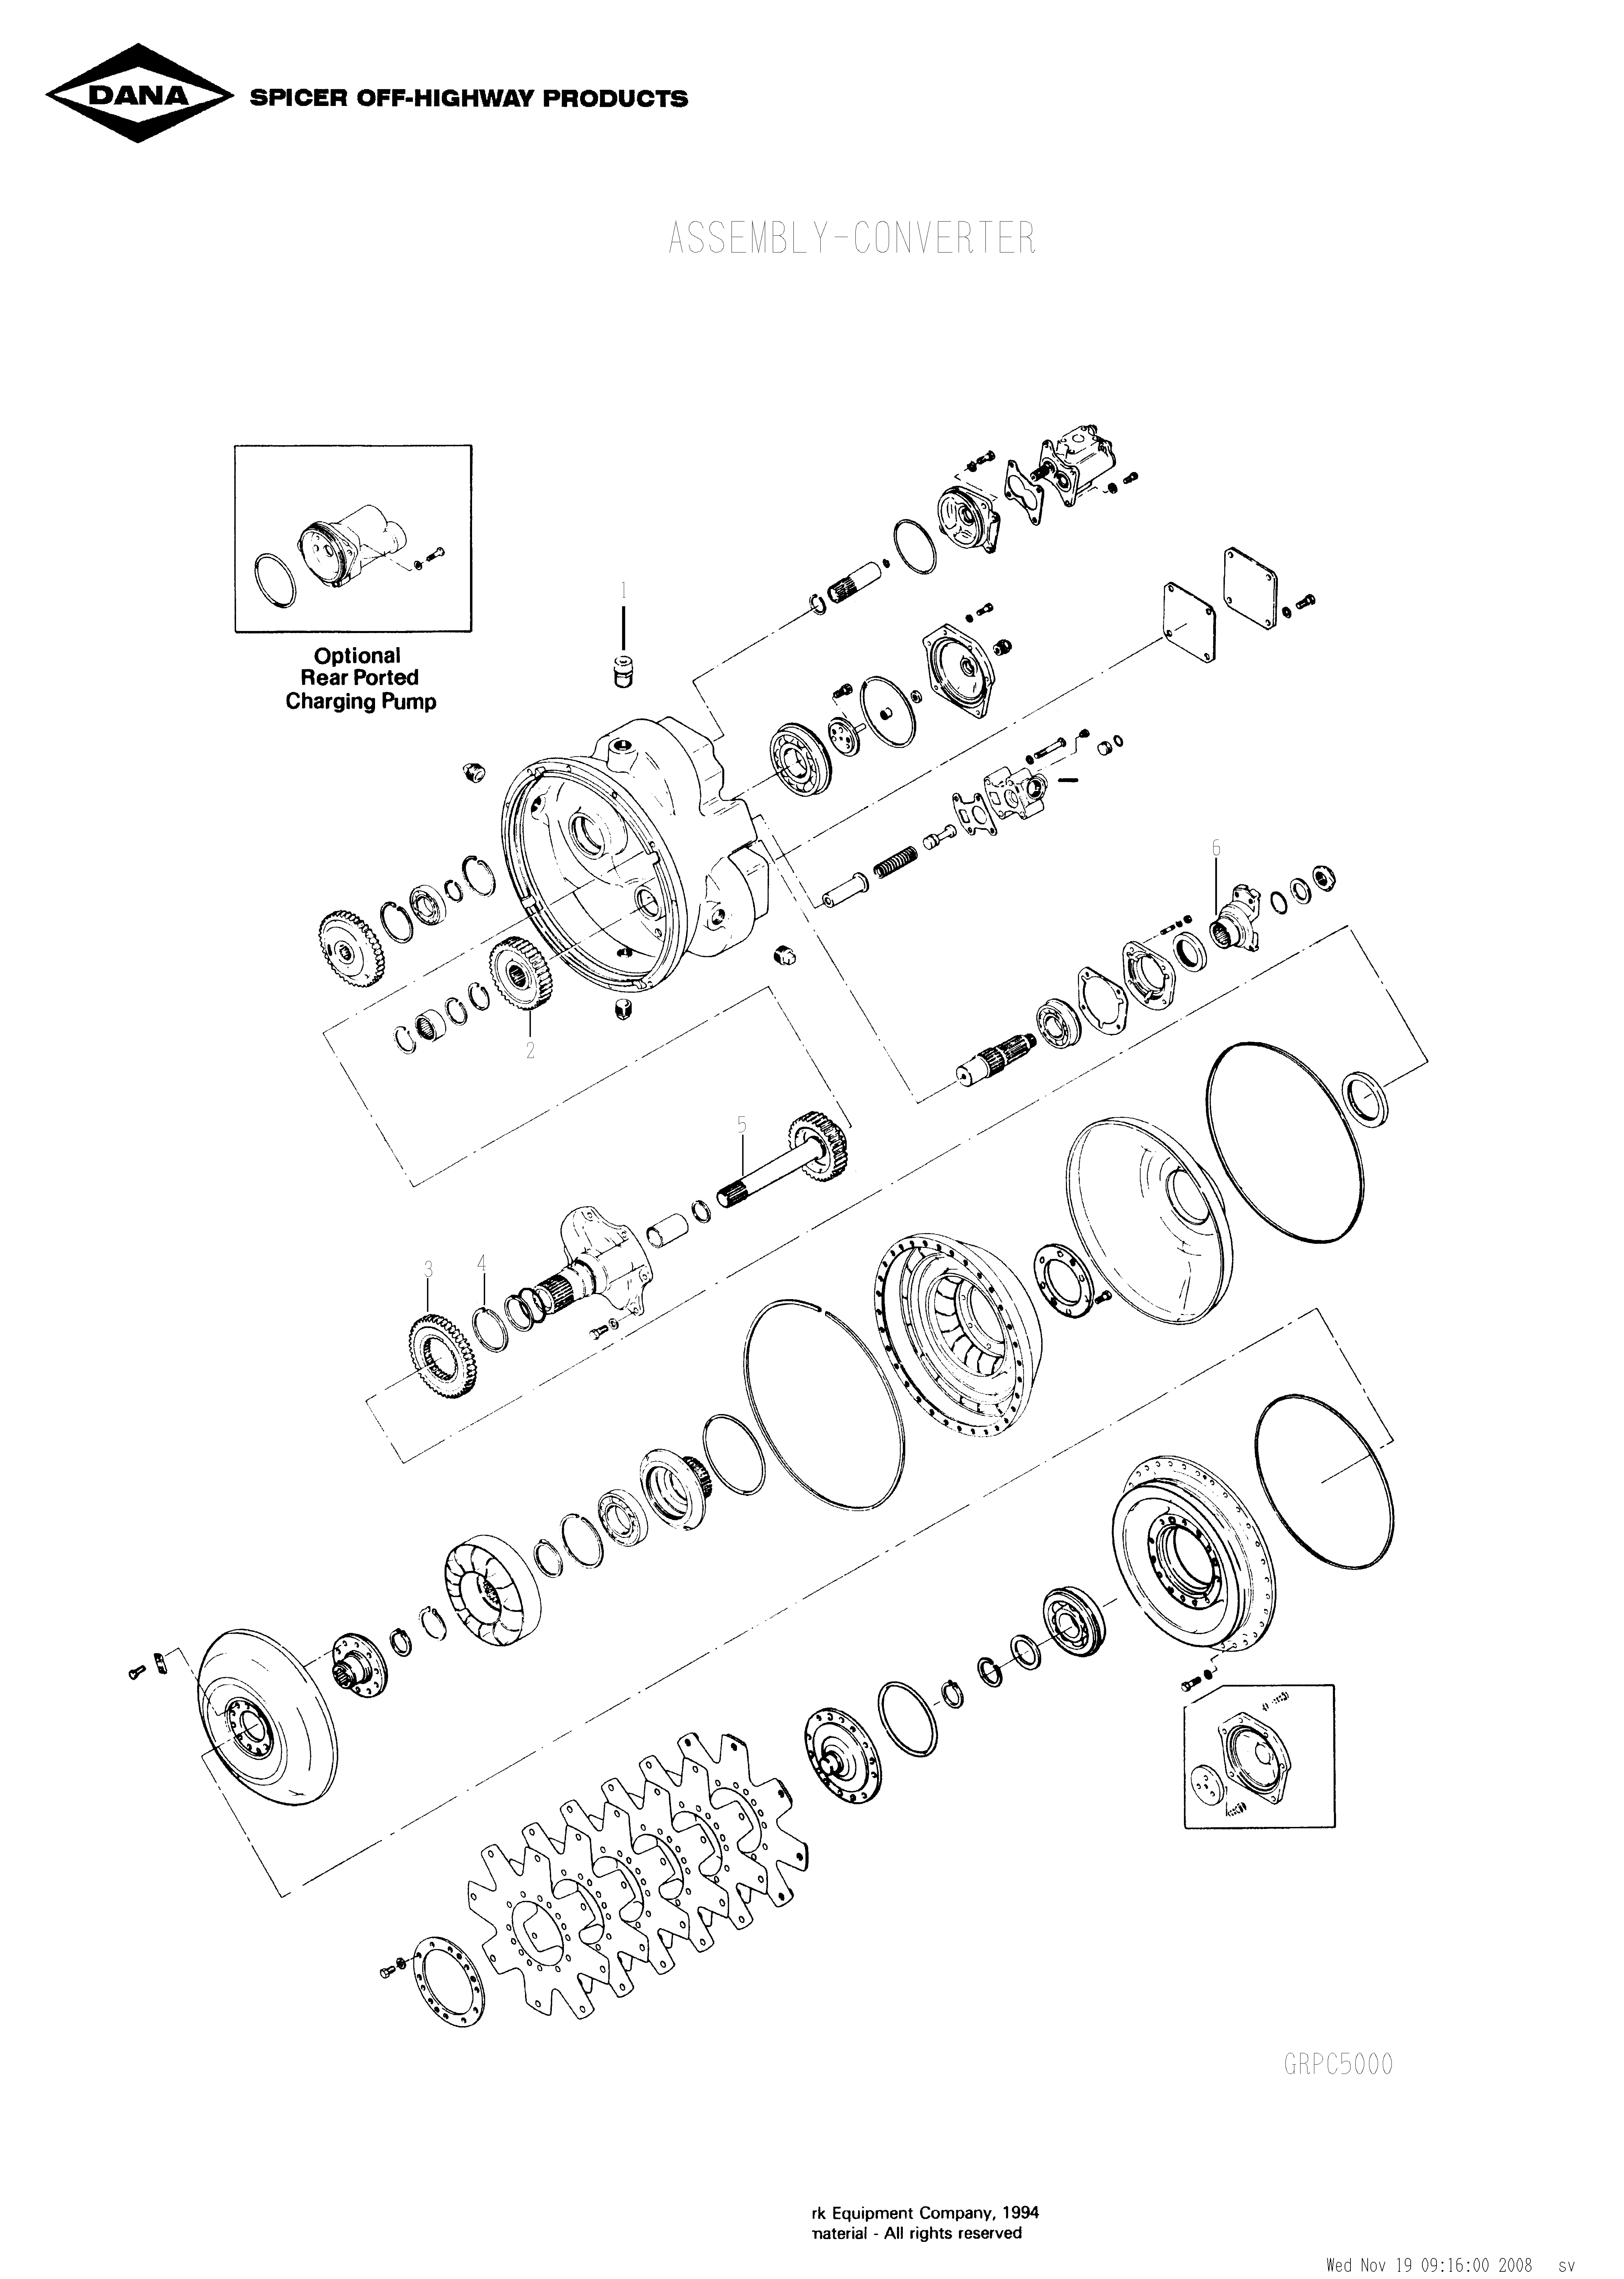 drawing for OLDENBURG LAKESHORE UV401137 - SPEED SENSOR KIT (figure 4)